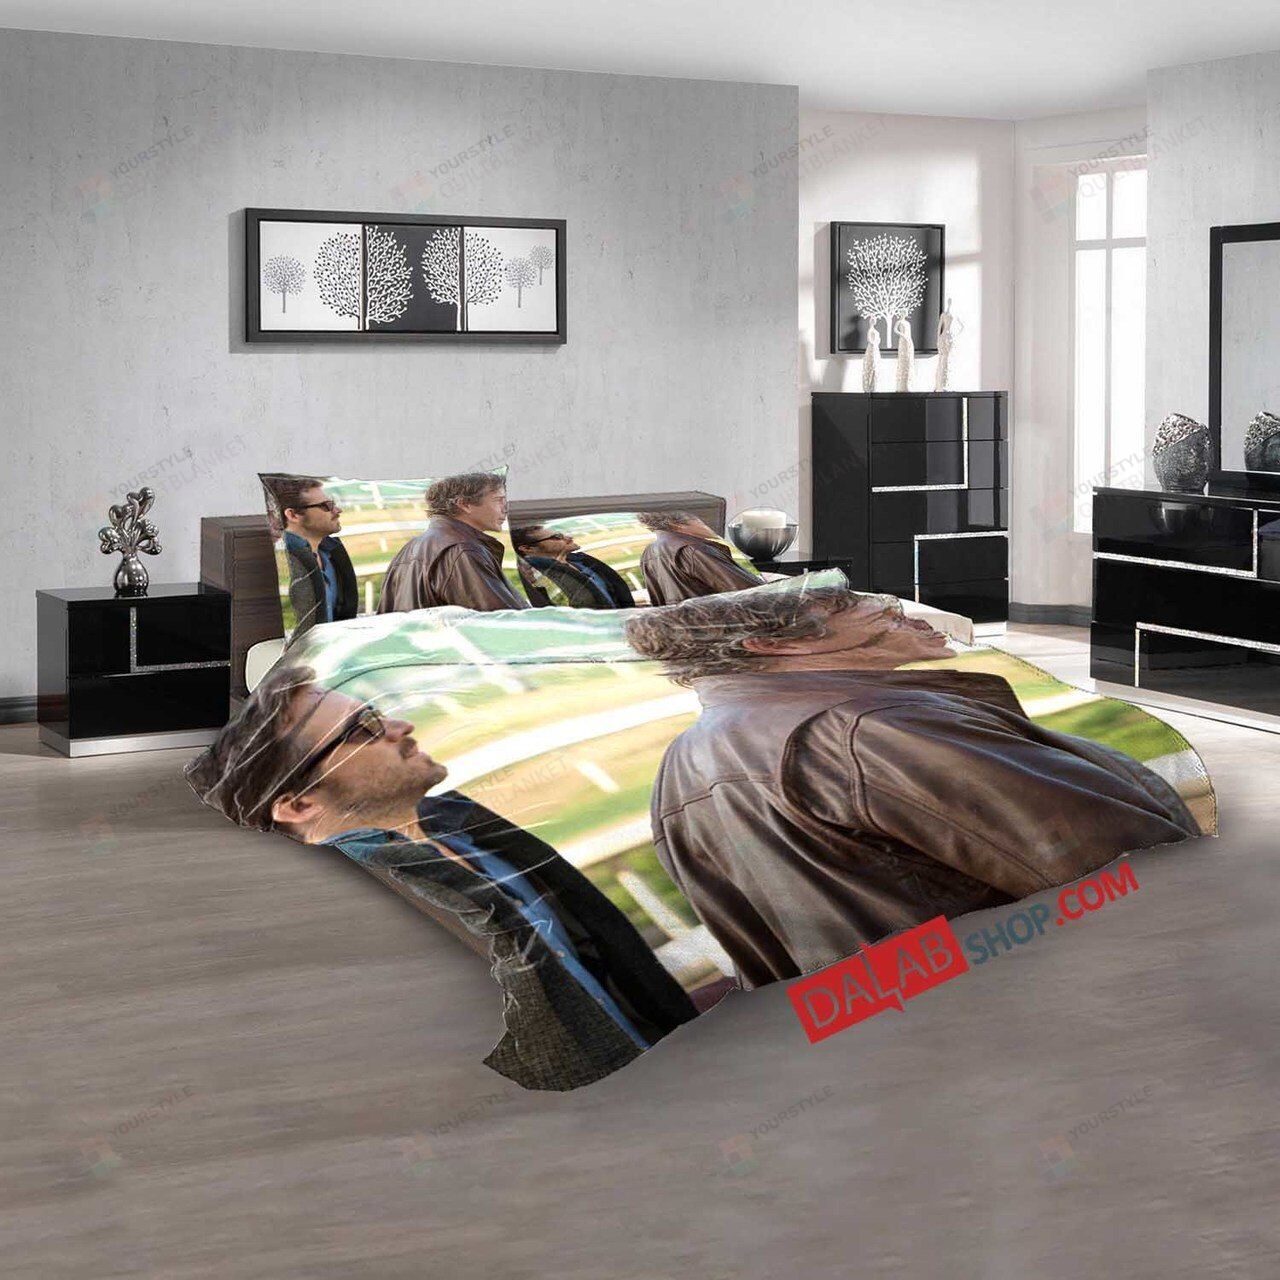 Movie Mississippi Grind V 3d Customized Duvet Cover Bedroom Sets Bedding Sets